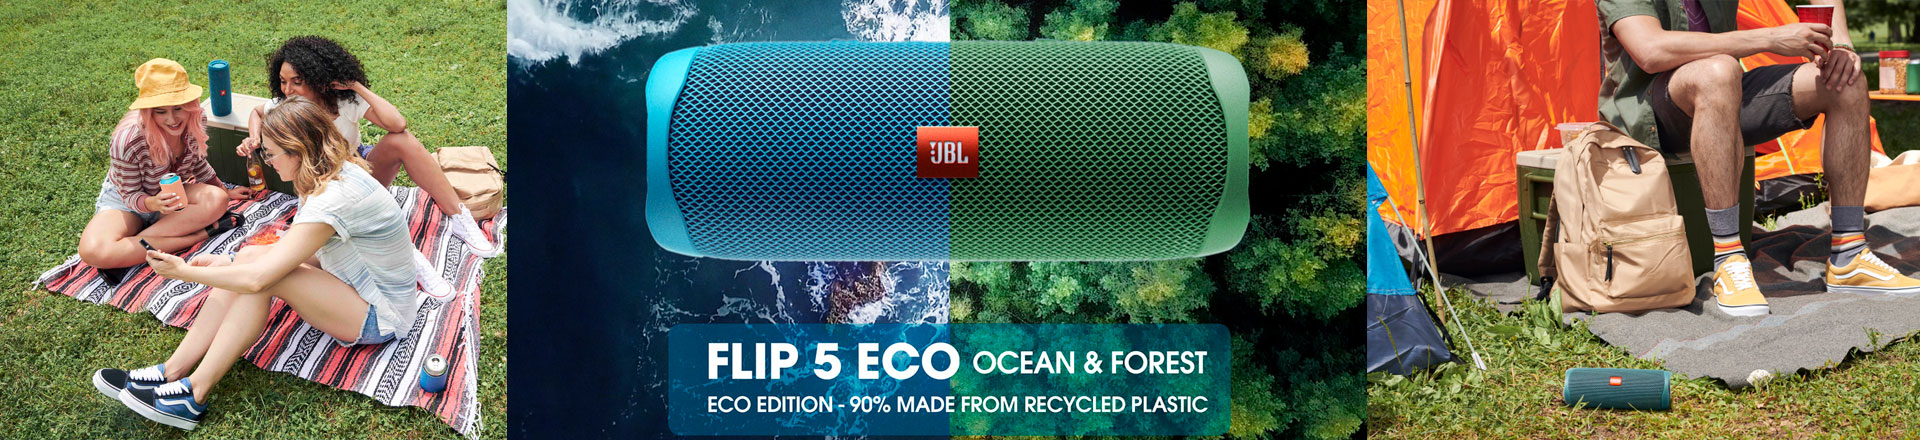 Jak być trendy i eco jednocześnie? Zobacz JBL Flip 5 Eco